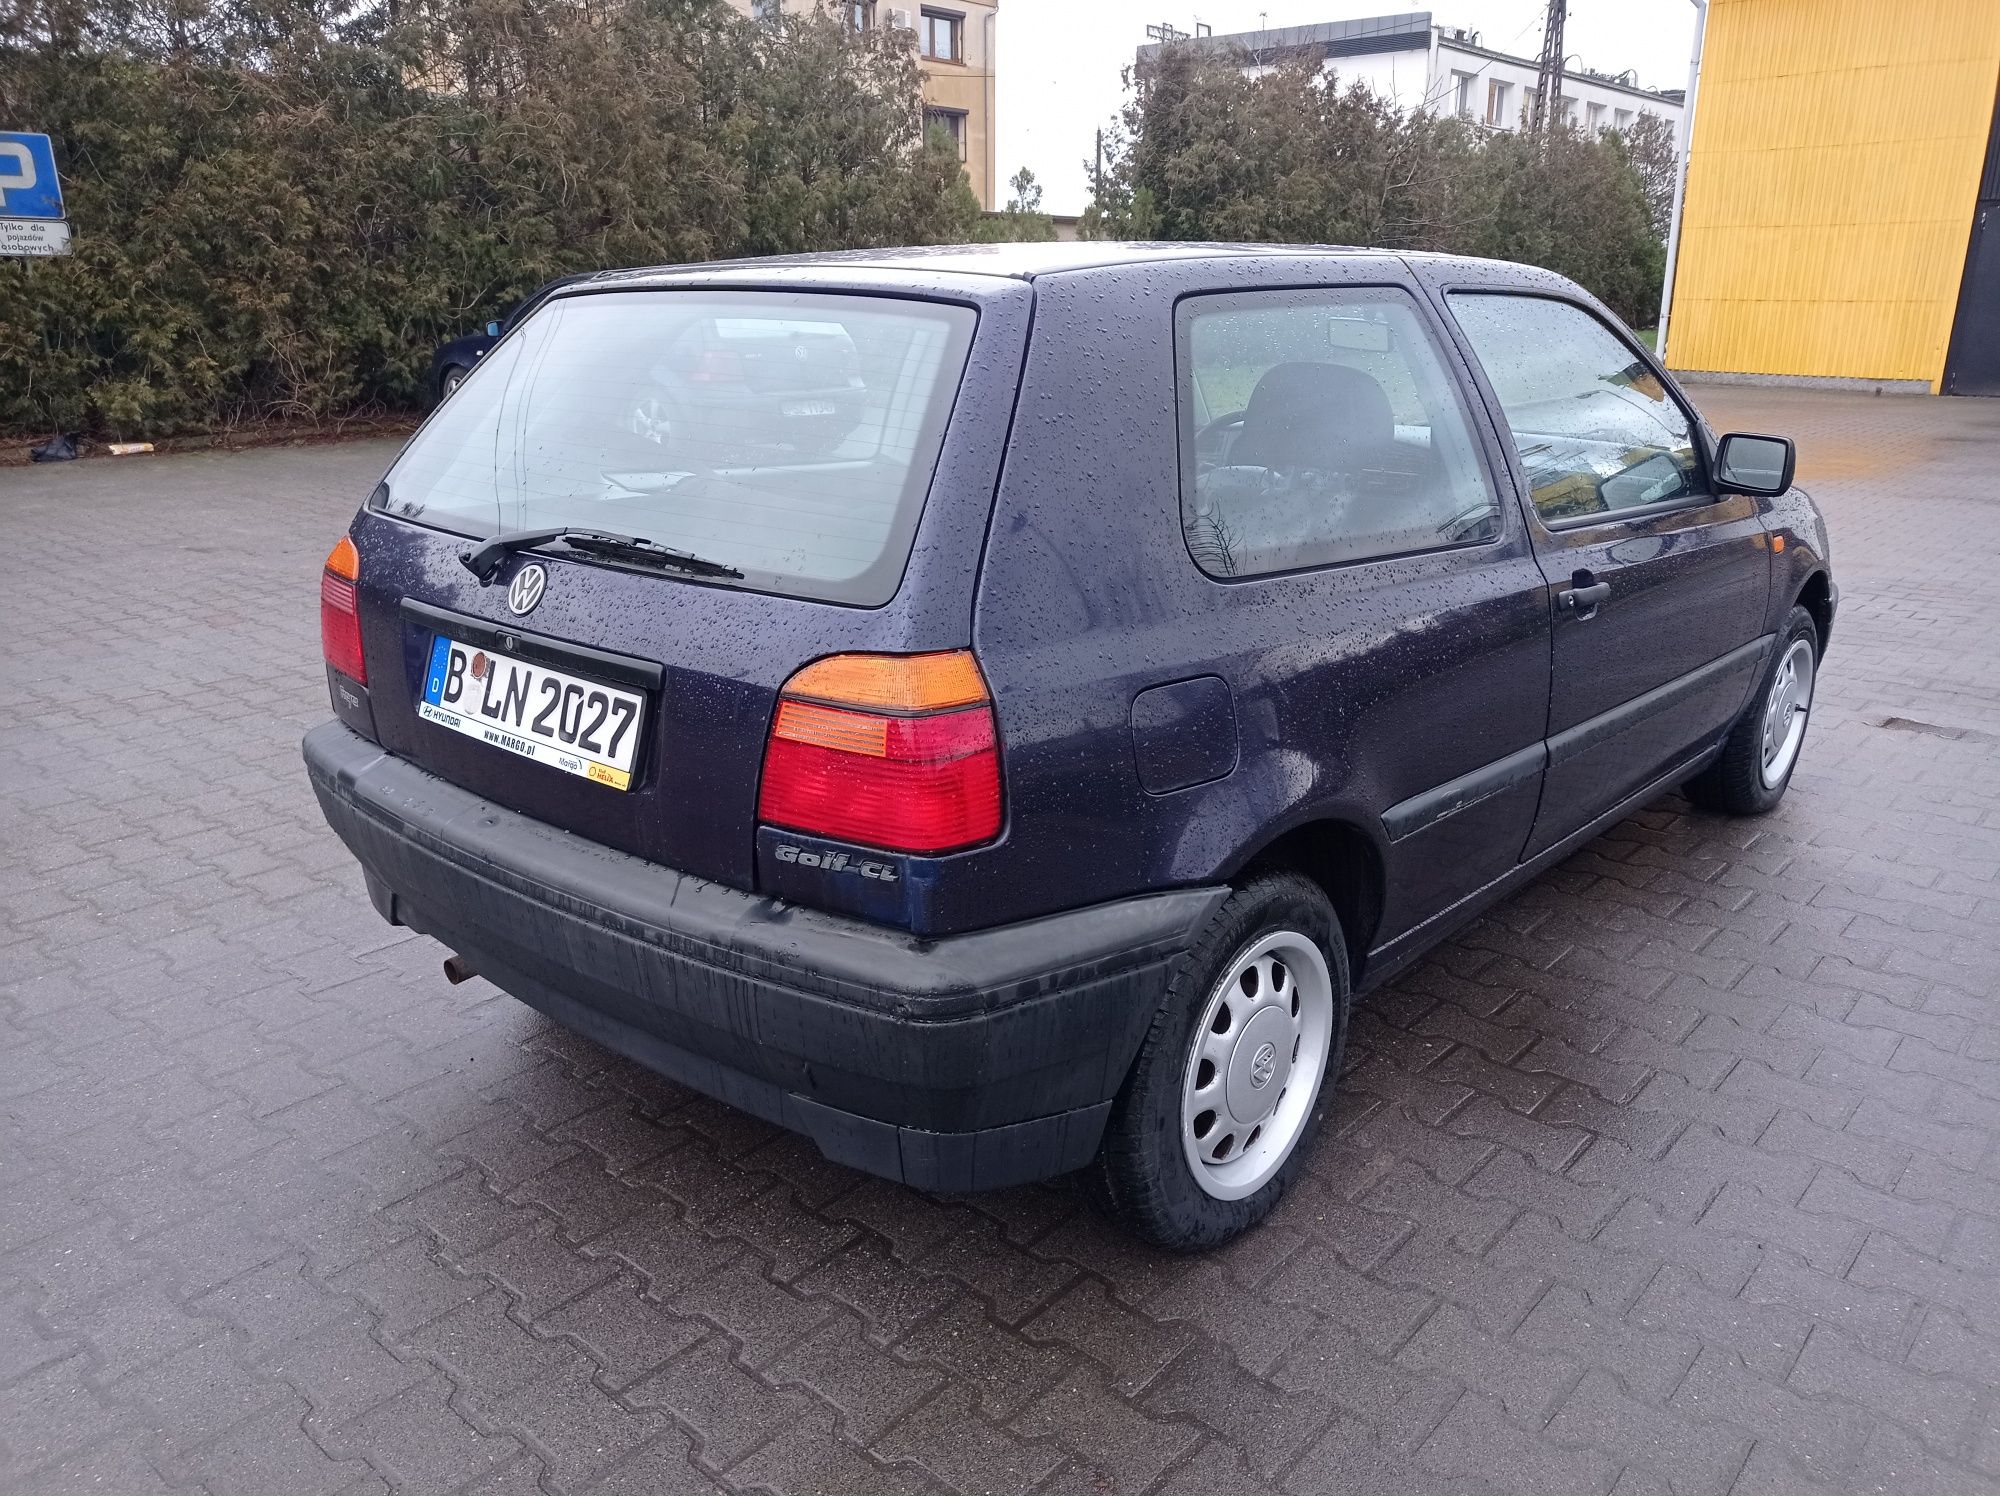 VW Golf lll_1.4 Benzyna_Z Niemiec_Okazja_